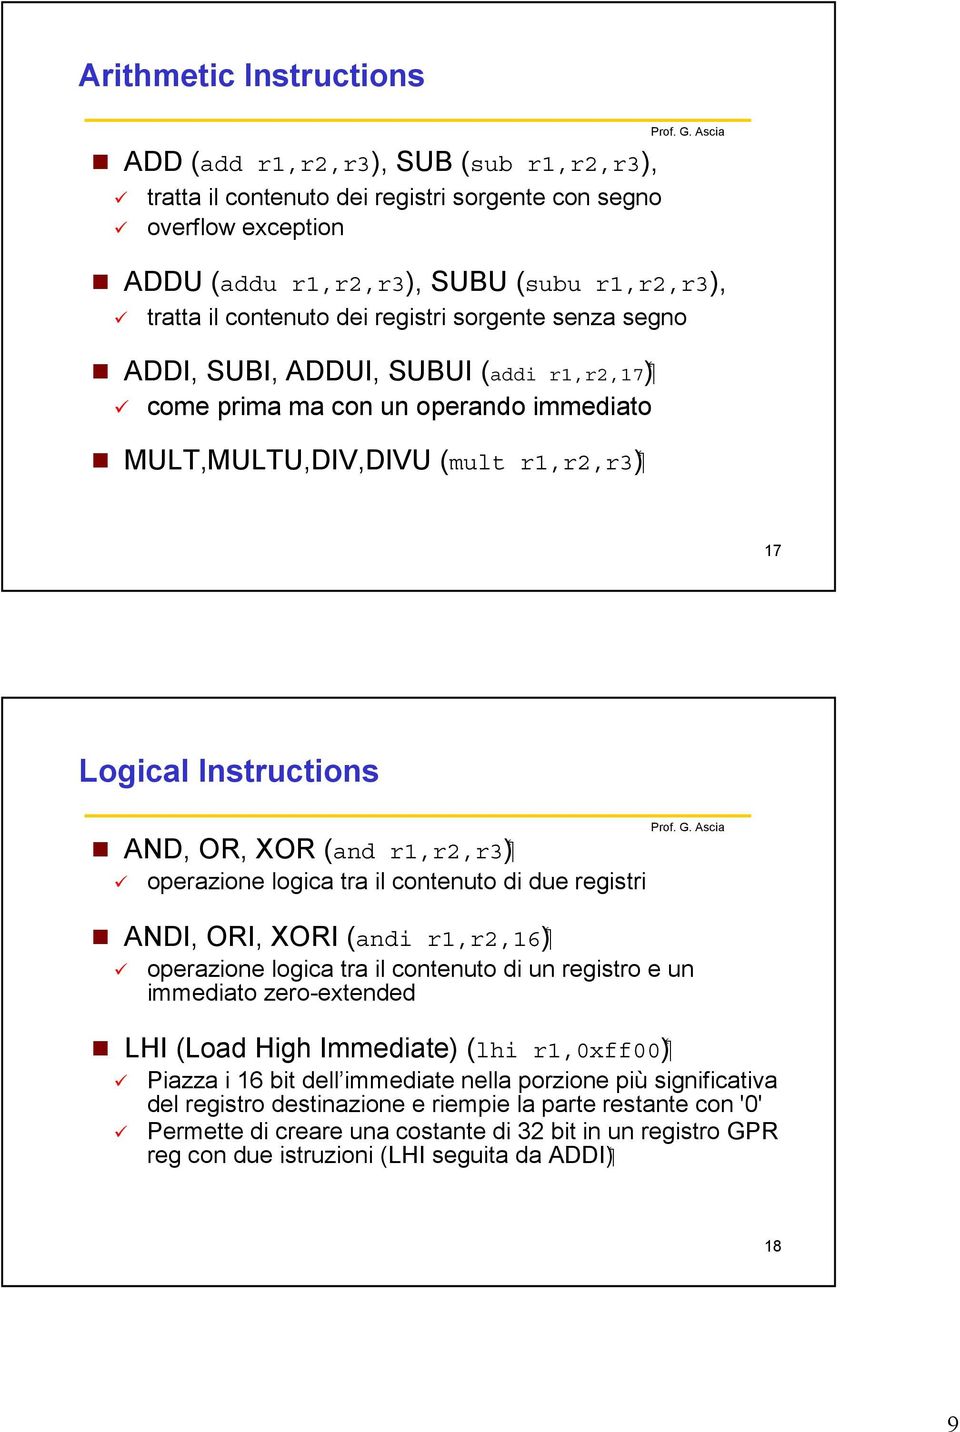 XOR (and operazione logica tra il contenuto di due registri ( r1,r2,16 ANDI, ORI, XORI (andi operazione logica tra il contenuto di un registro e un immediato zero-extended ( r1,0xff00 LHI (Load High